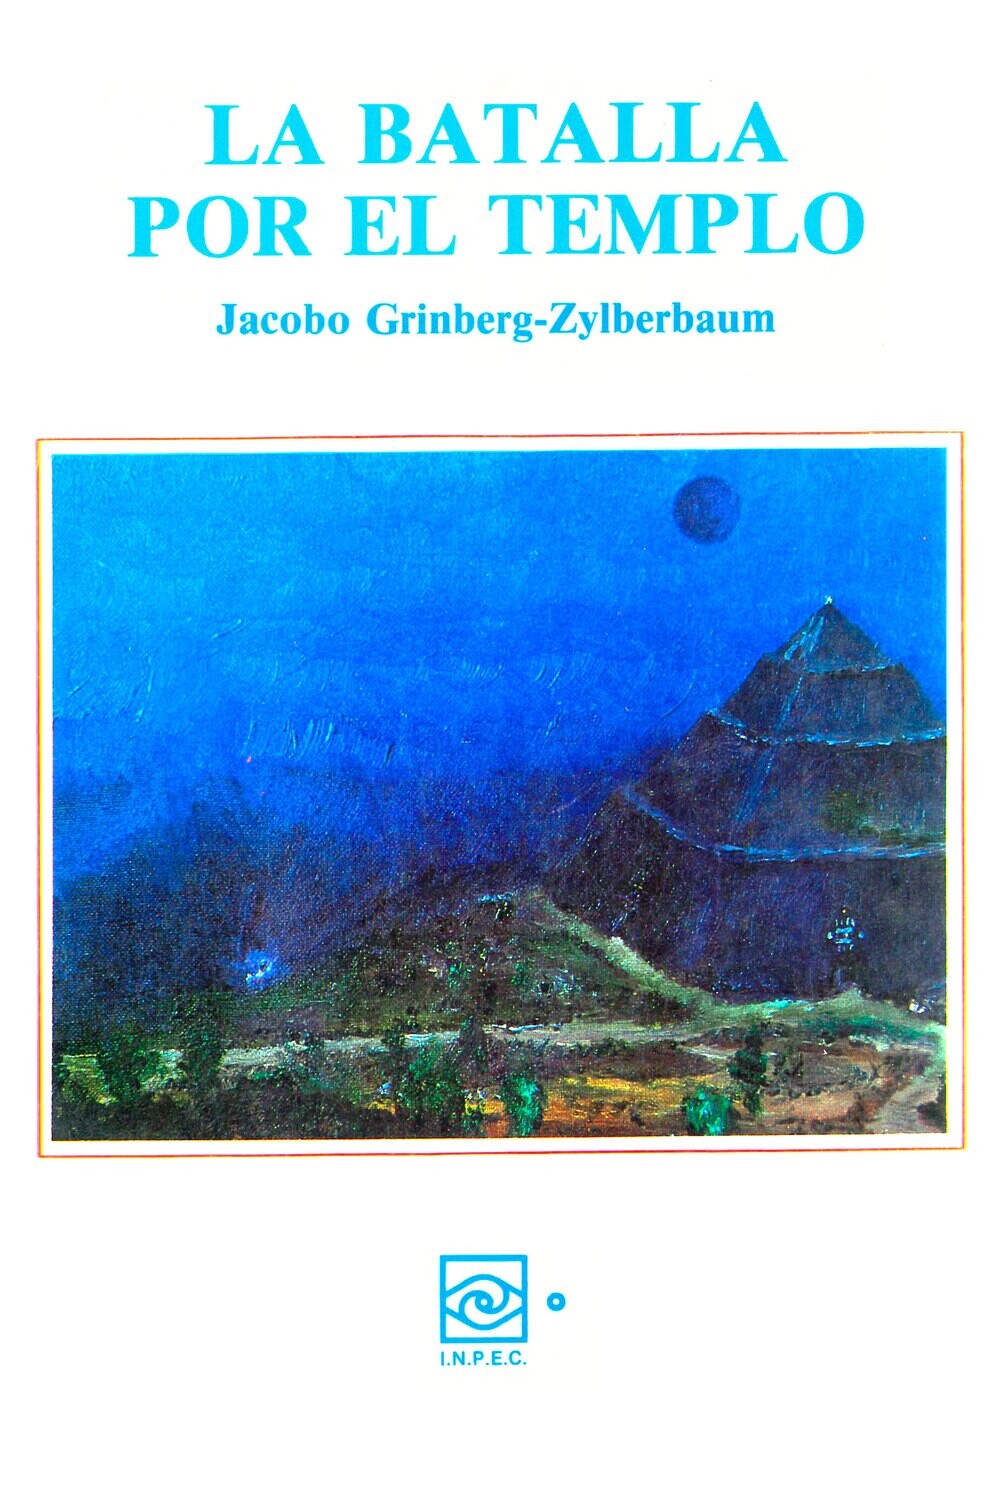 Jacobo Grinberg-Zylberbaum La Batalla por el Templo